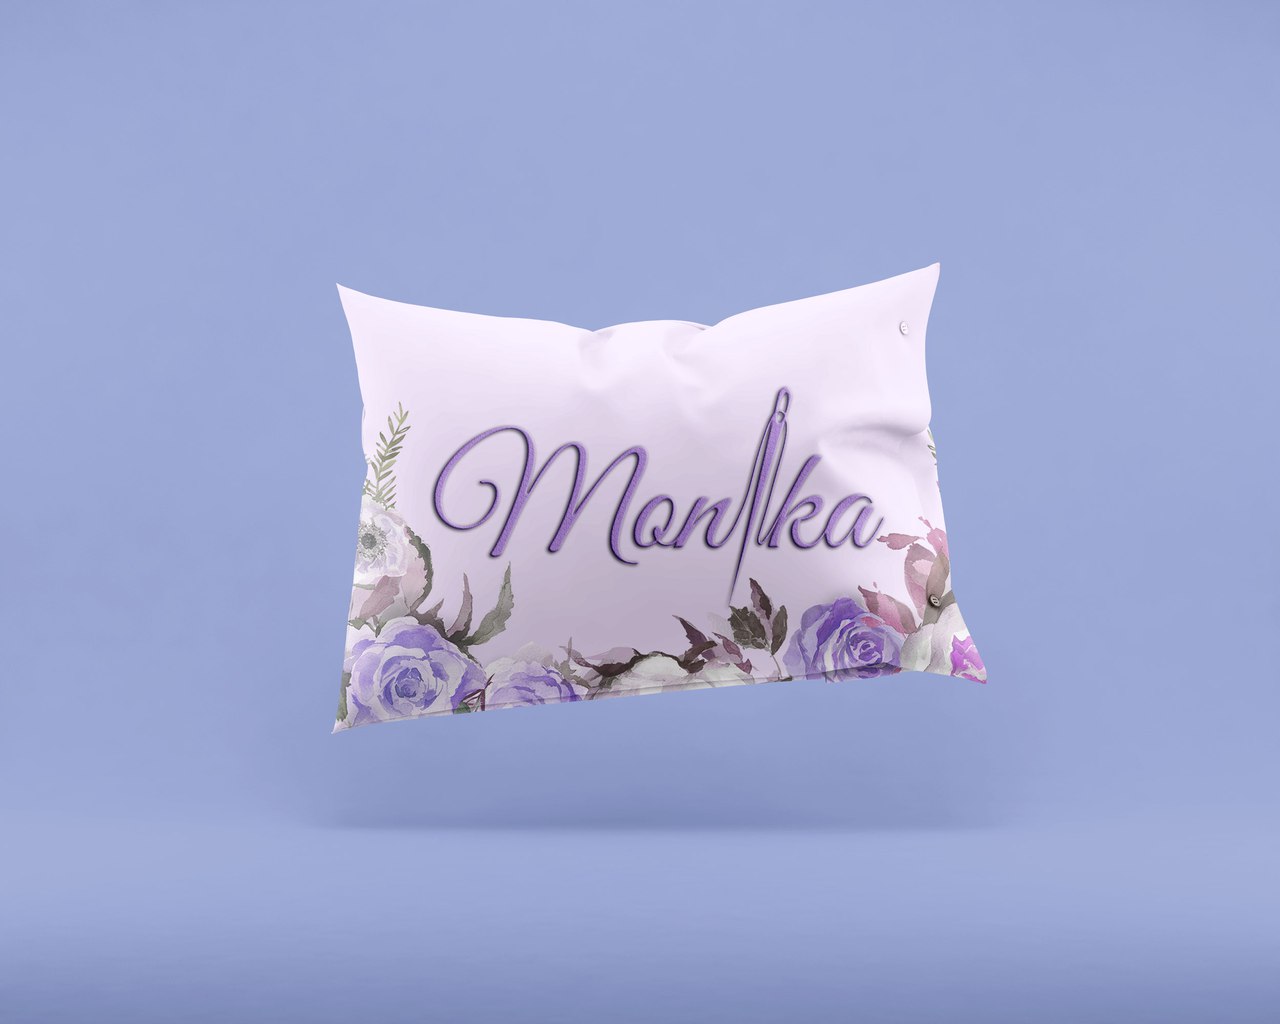 Логотип для швейной фирмы "Моника"